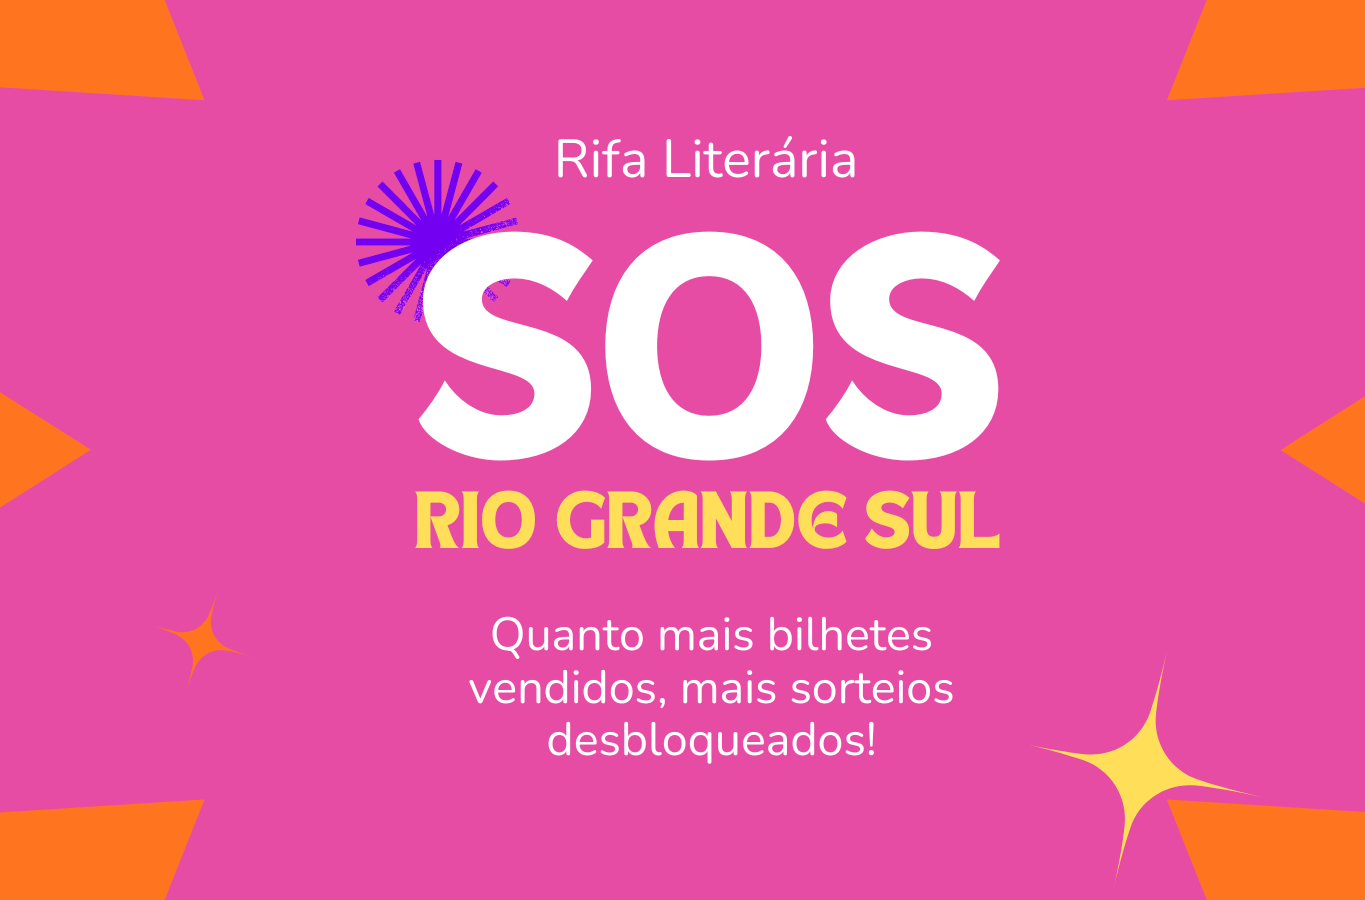 Rifa Literária - SOS Rio Grande do Sul